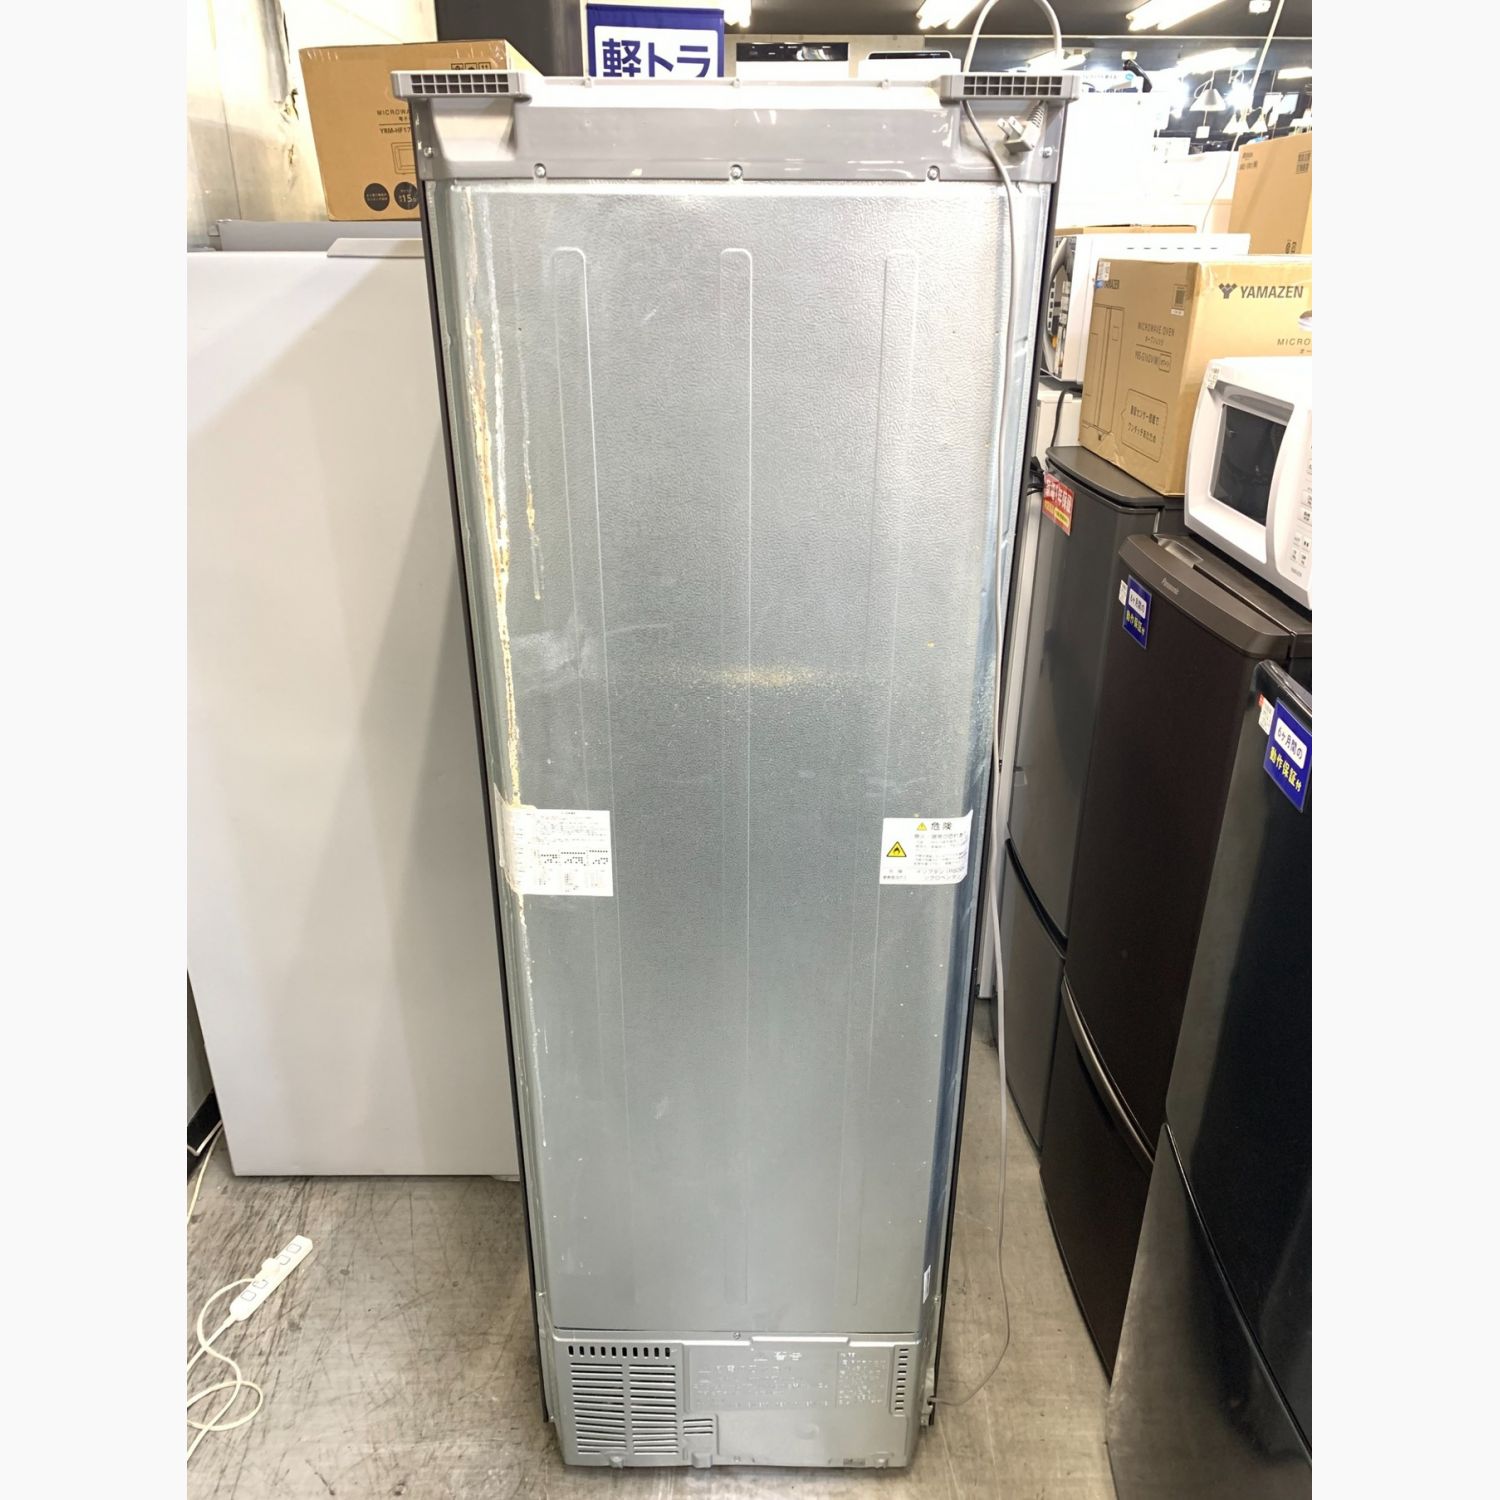 AQUA (アクア) 5ドア冷蔵庫 自動製氷機能付 AQR-SV42H(T) 2019年 